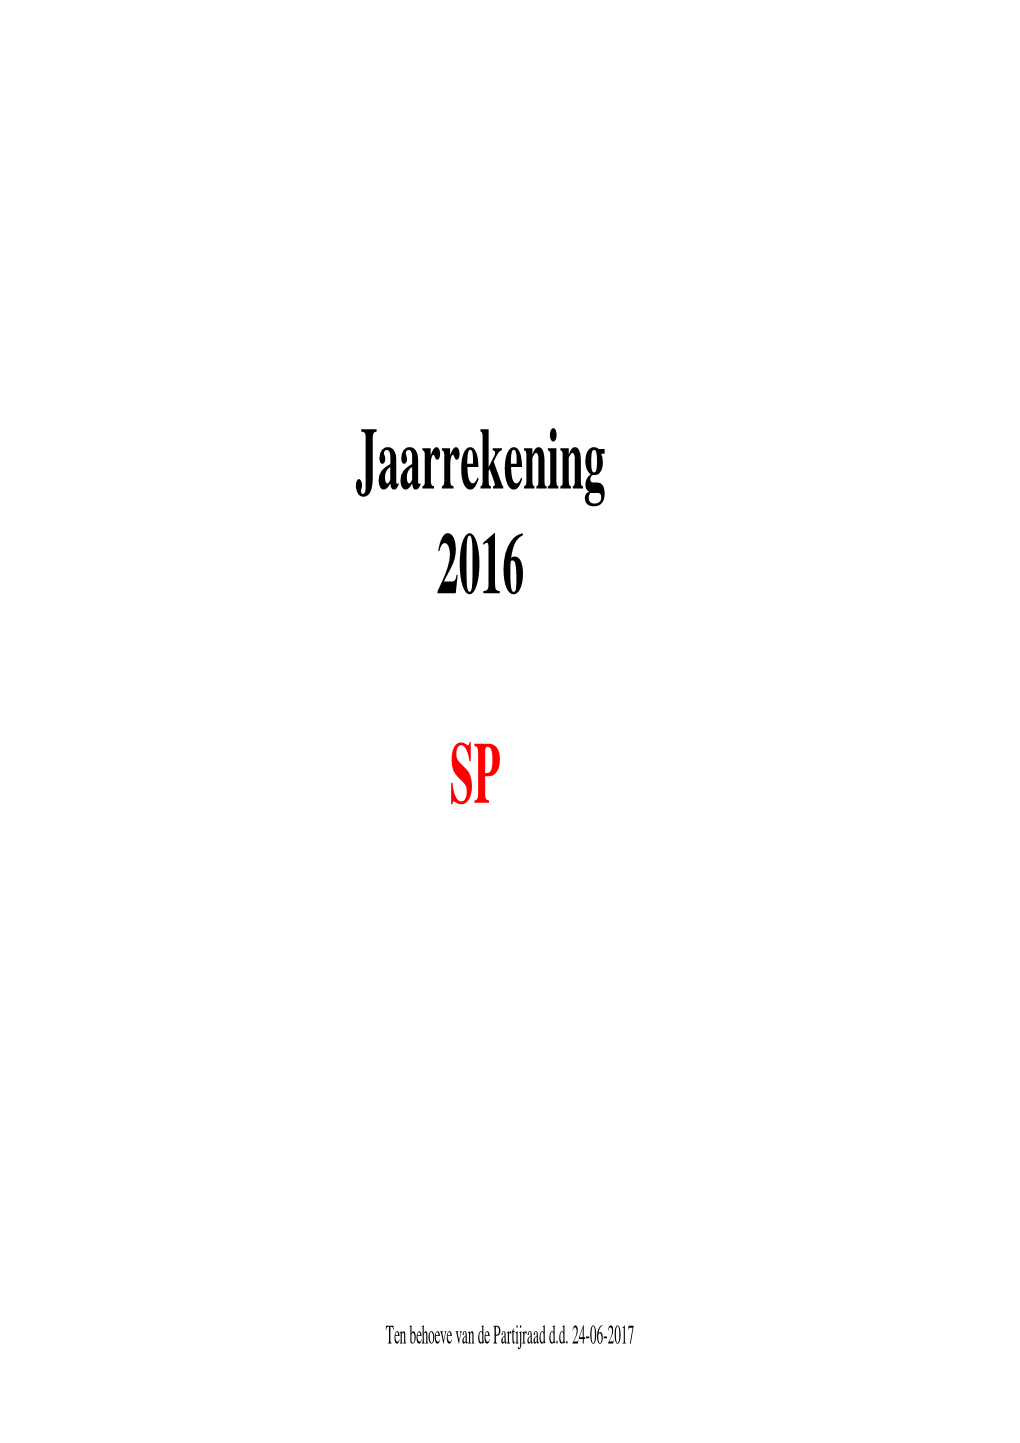 Jaarrekening 2016 SP